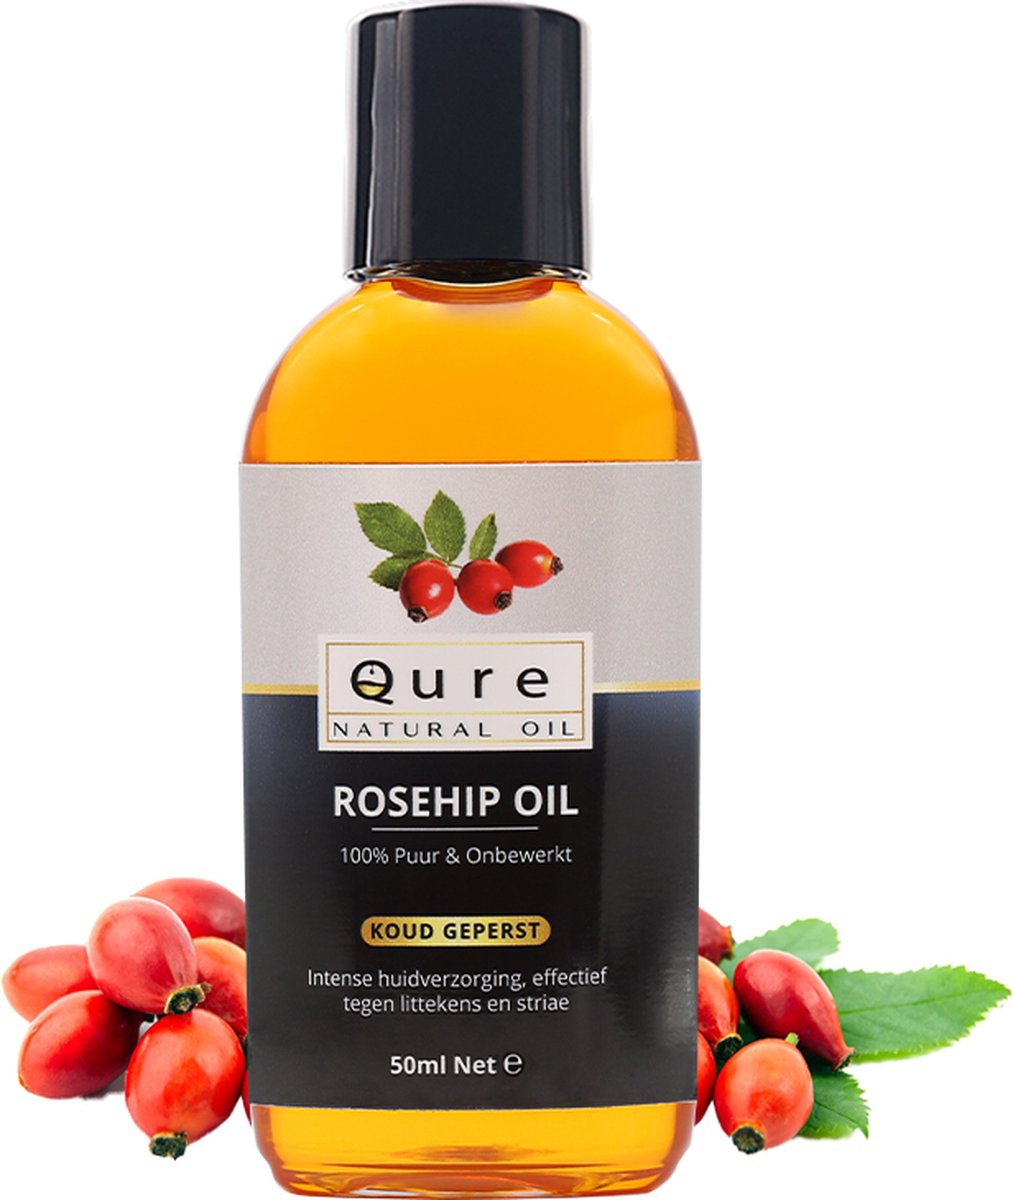 Rozenbottelolie 50ml| 100% Puur & Onbewerkt | Rosehip Oil voor huid, haar en lichaam